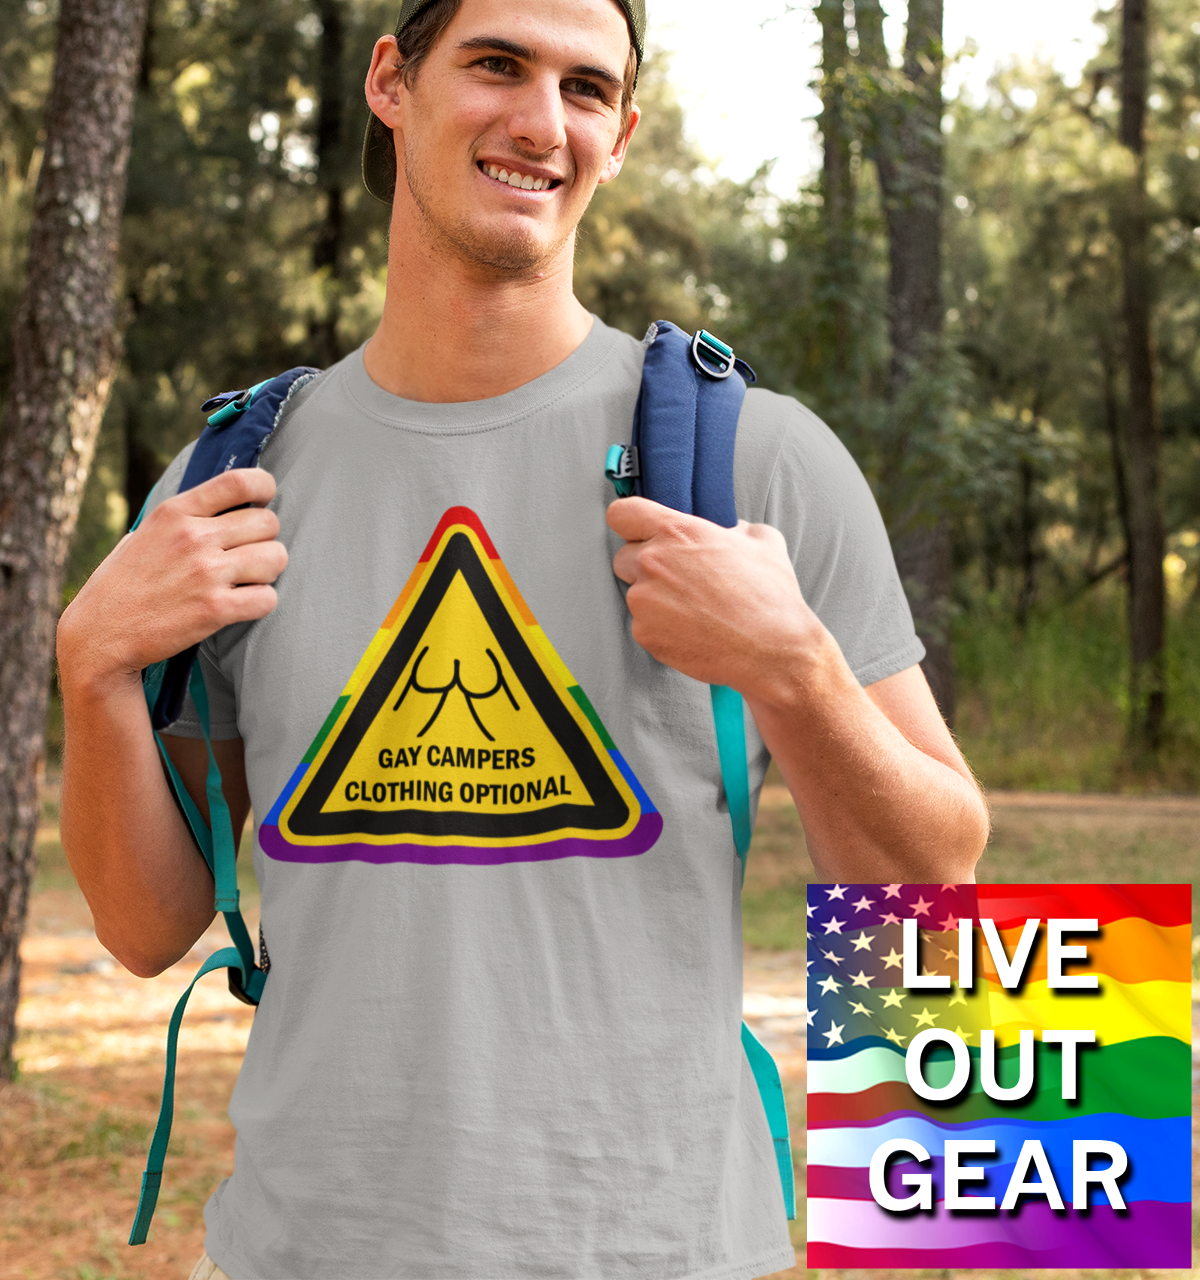 Campeurs gays - Panneau d’avertissement de vêtements en option T-shirt unisexe pour adultes